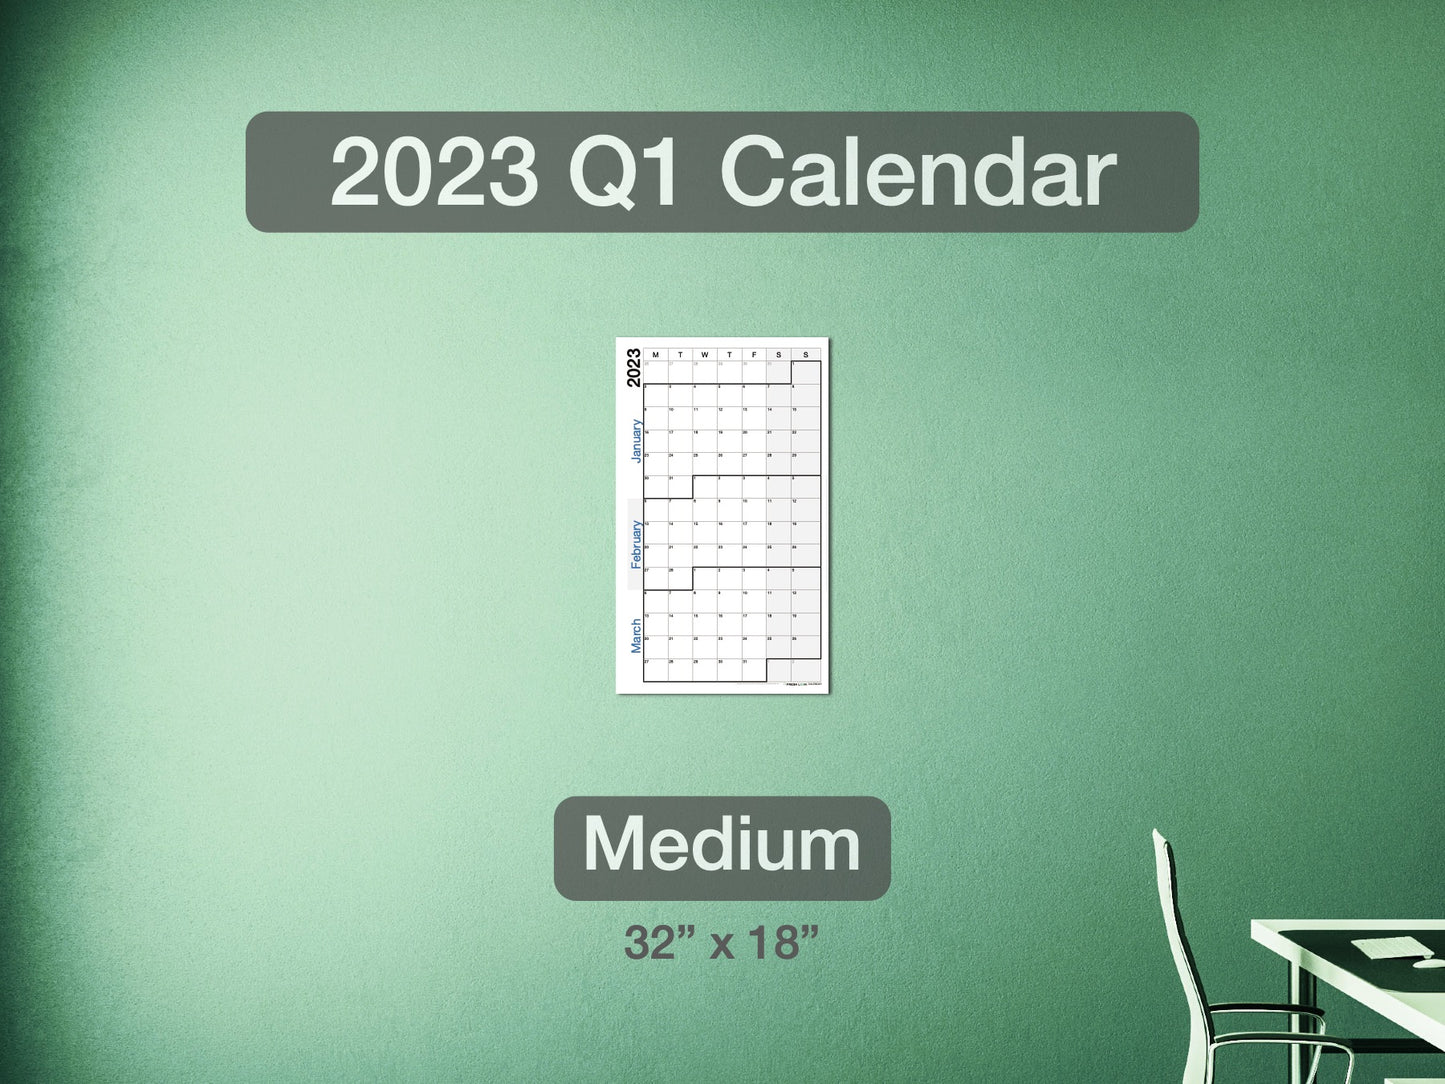 2023 Q1 Calendar Medium